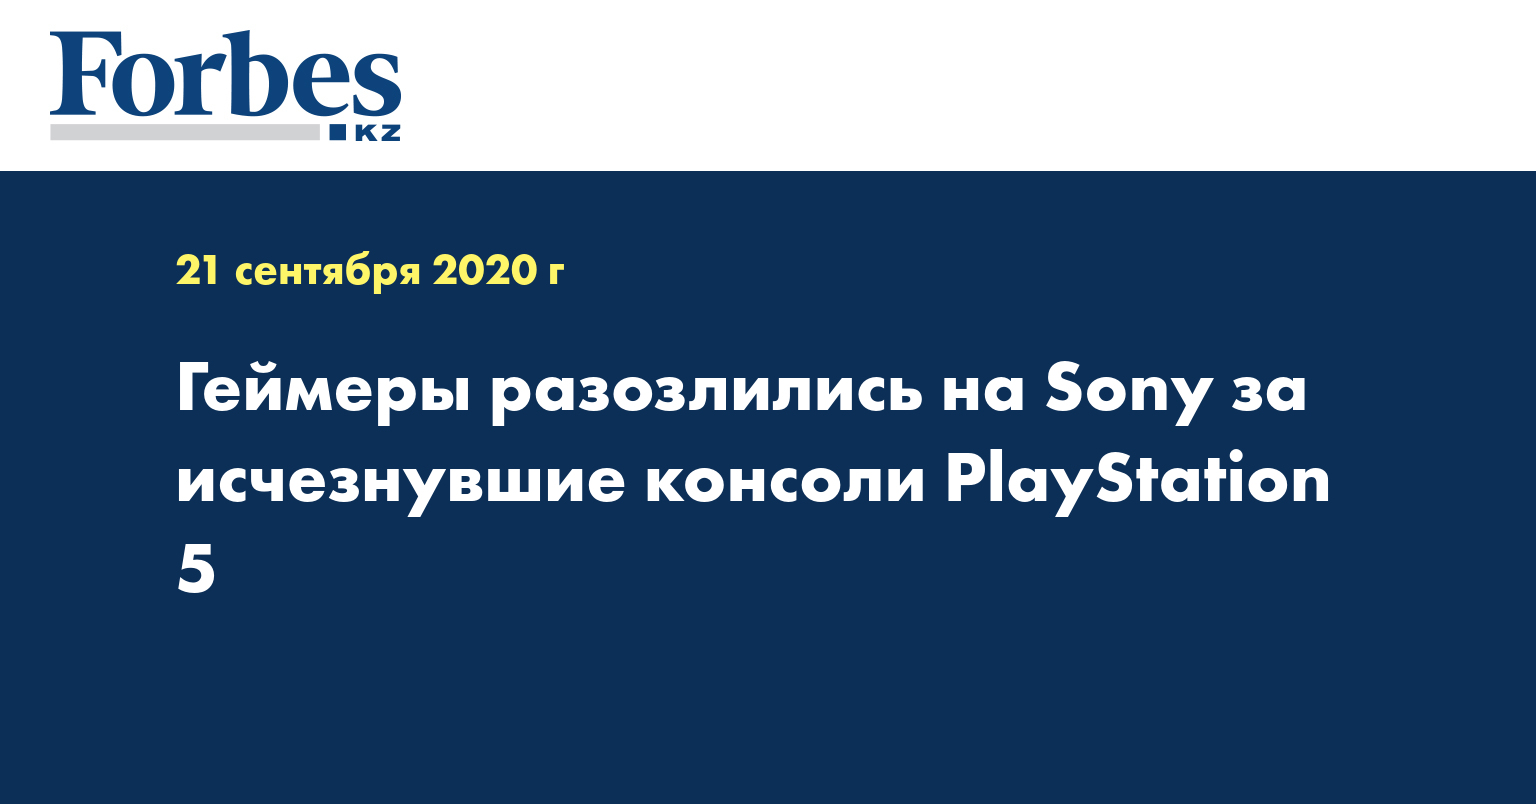 Геймеры разозлились на Sony за исчезнувшие консоли PlayStation 5